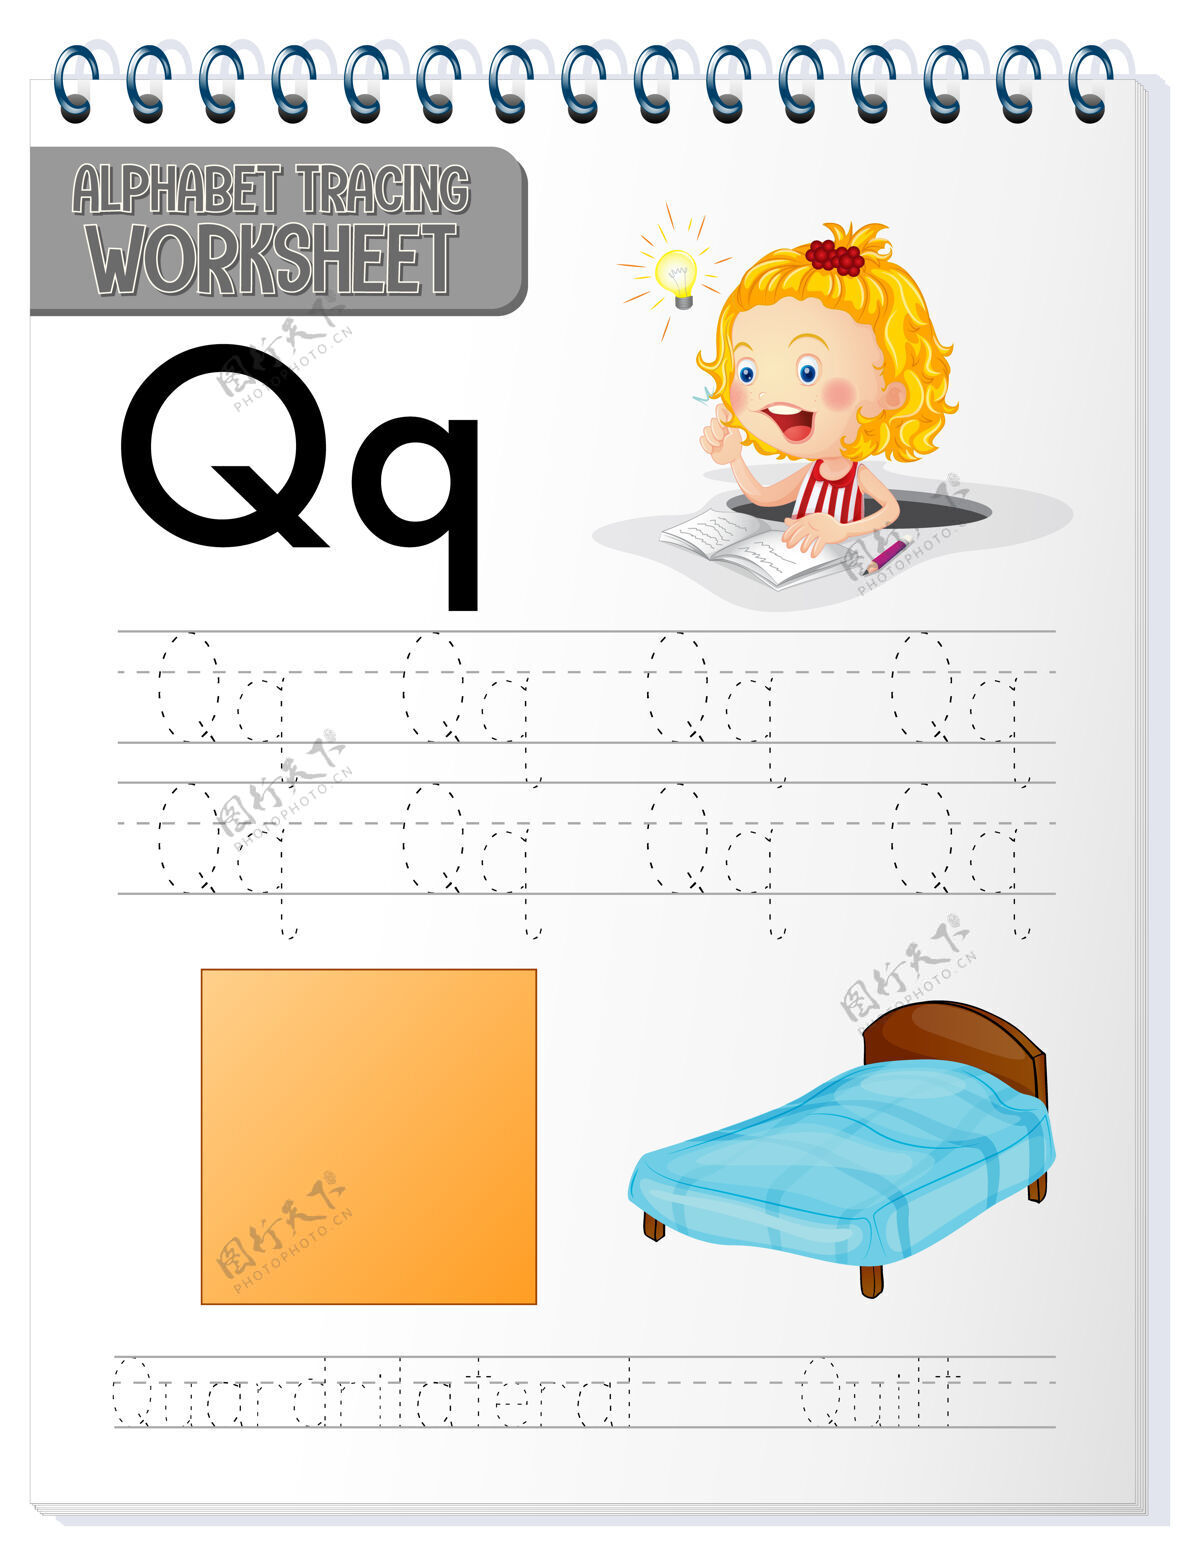 实践字母表跟踪工作表与字母q和q教育卡通形状